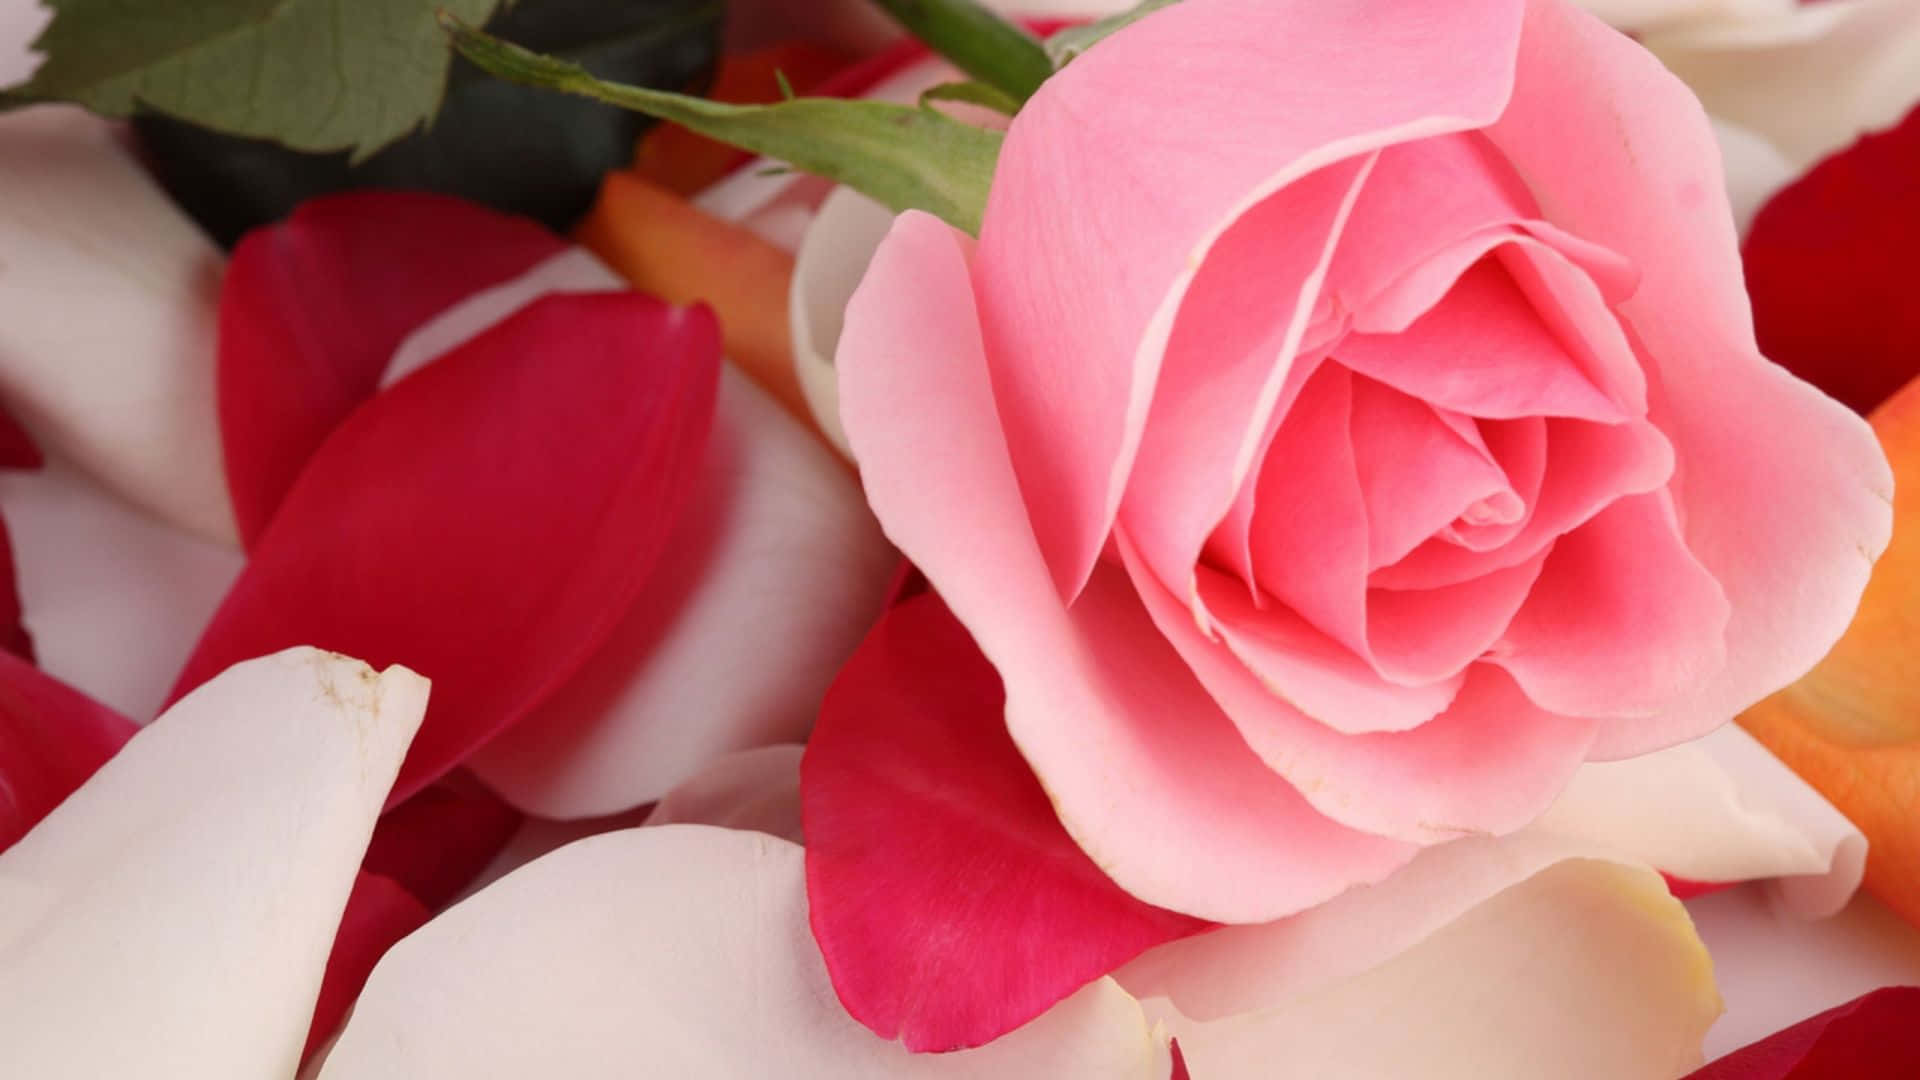 Unarosa Rosa Floreciente Rodeada De Exuberante Y Vibrante Follaje.